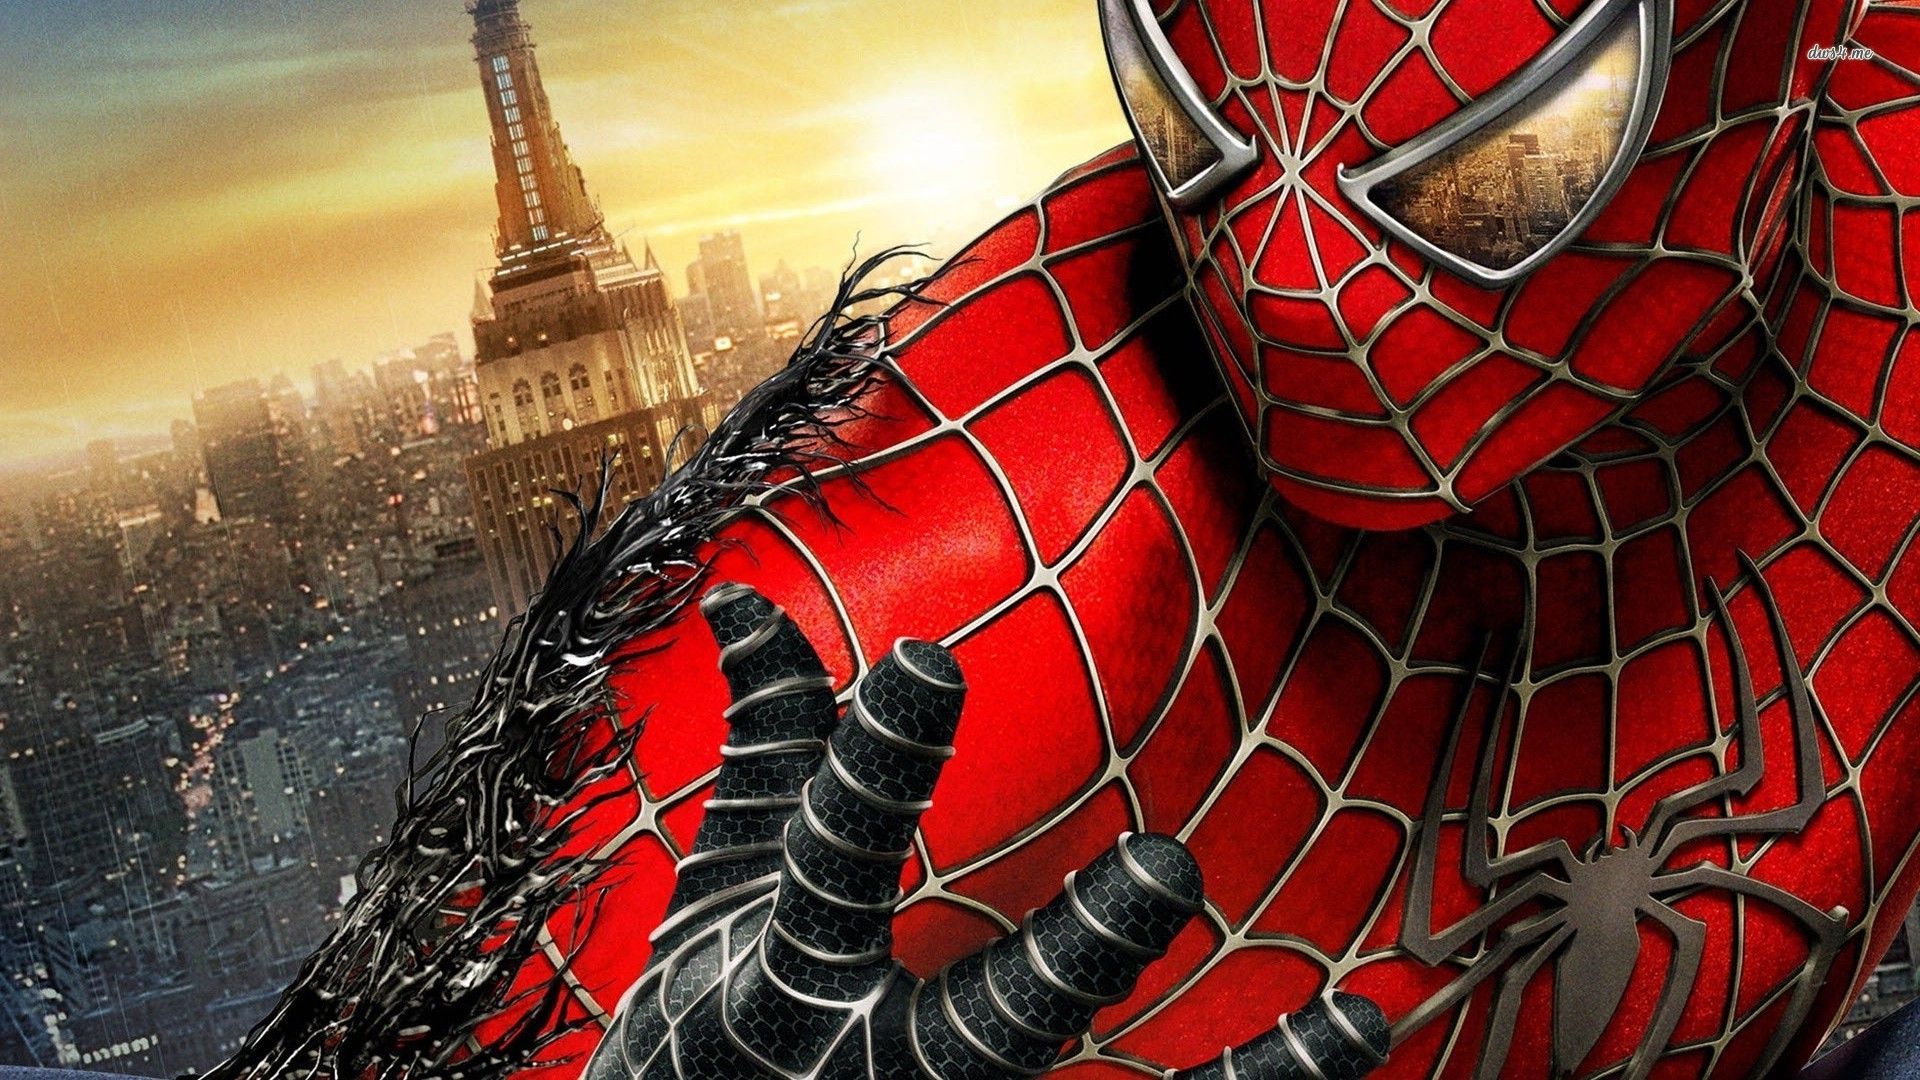 Download Download Spiderman Wallpaper Full HD #B7QLm